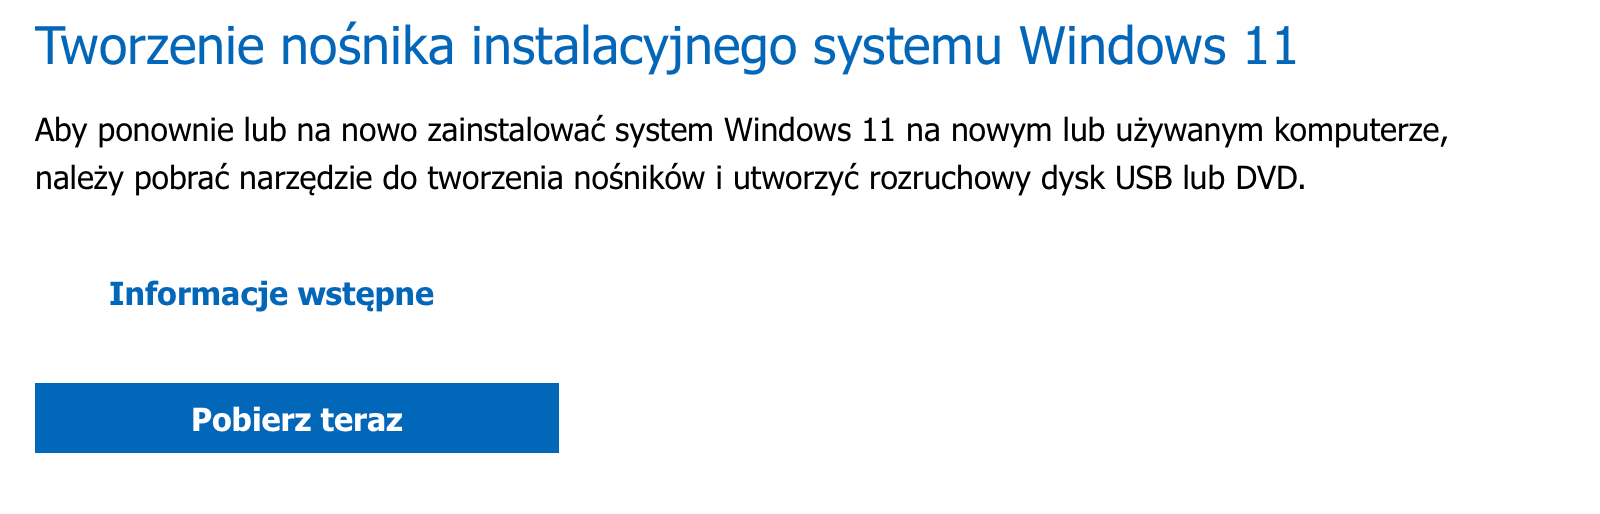 Tworzenie nośnika instalacyjnego systemu Windows 11